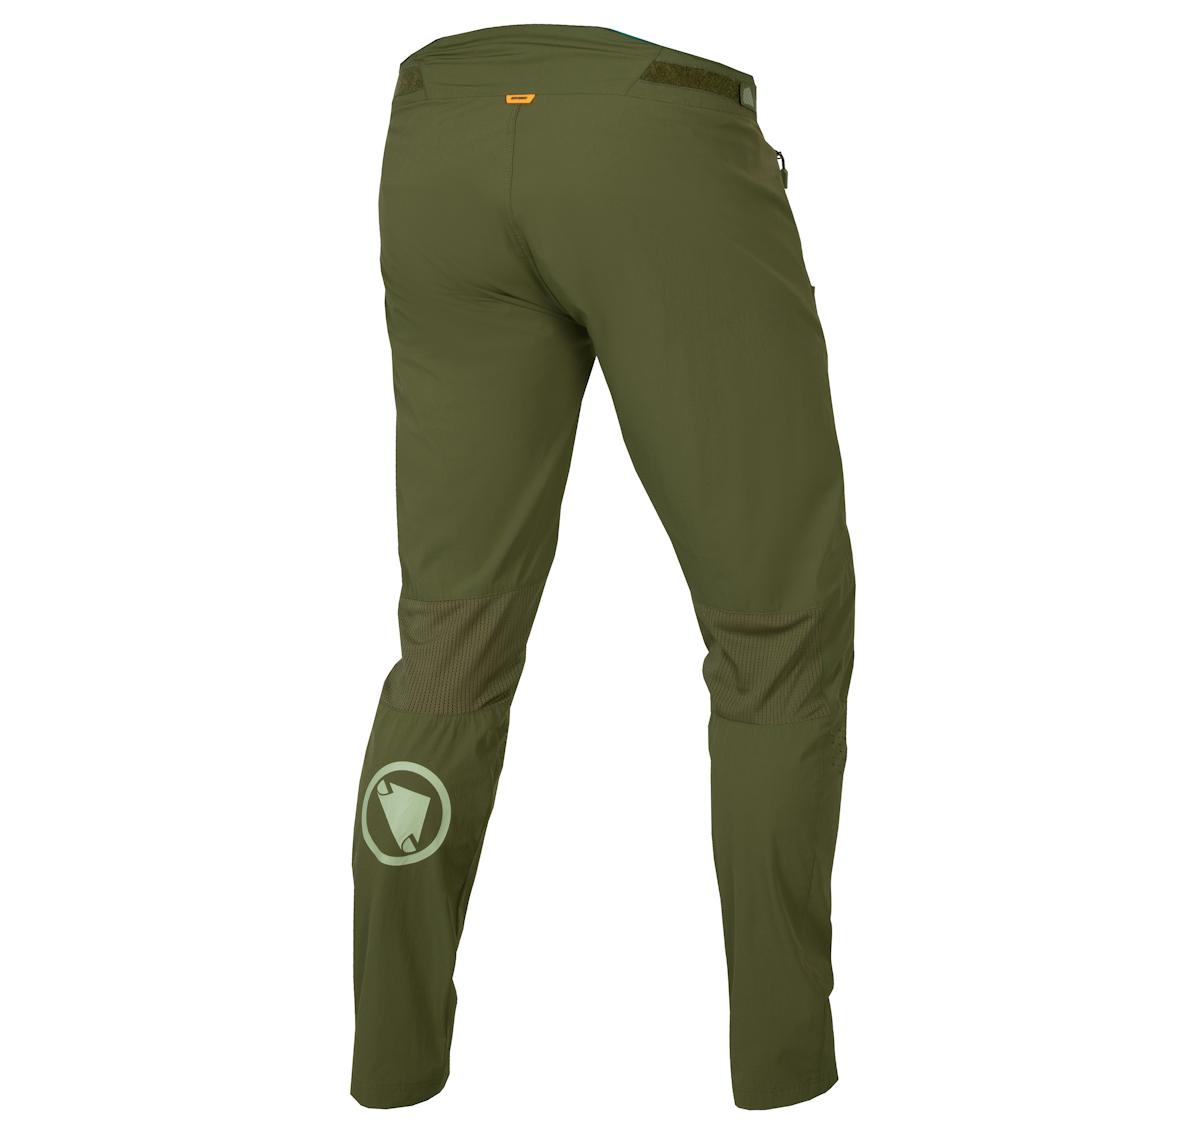 Endura’s New MT500 Burner Lite Pants & Jersey Offer Breathable Full ...